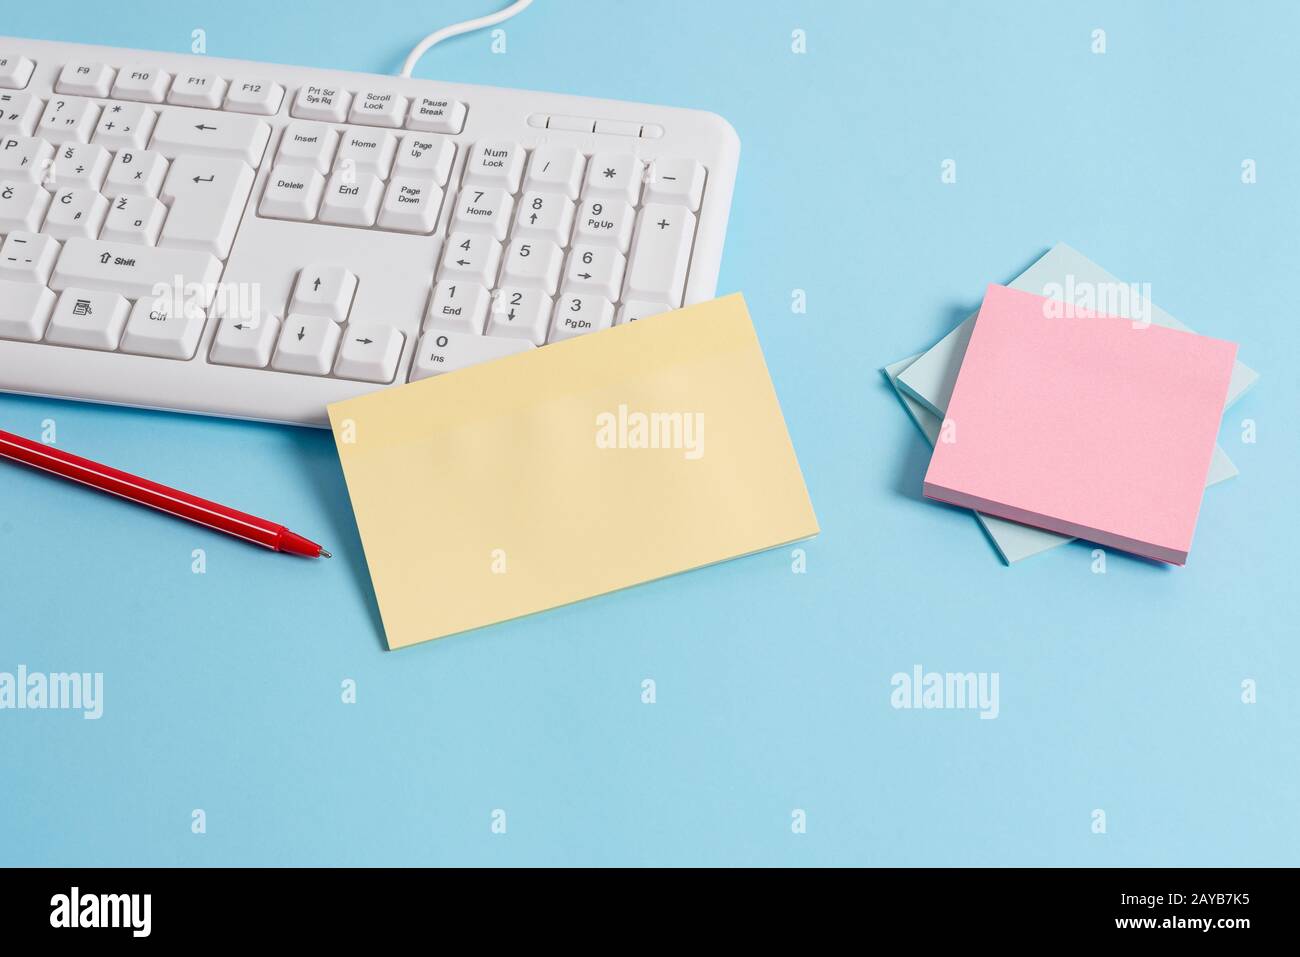 Scrivania blu chiaro con diverse dimensioni di note cartacee vuote, tastiera per computer ed elettrodomestici per ufficio. Spazio vuoto sui promemoria, no Foto Stock